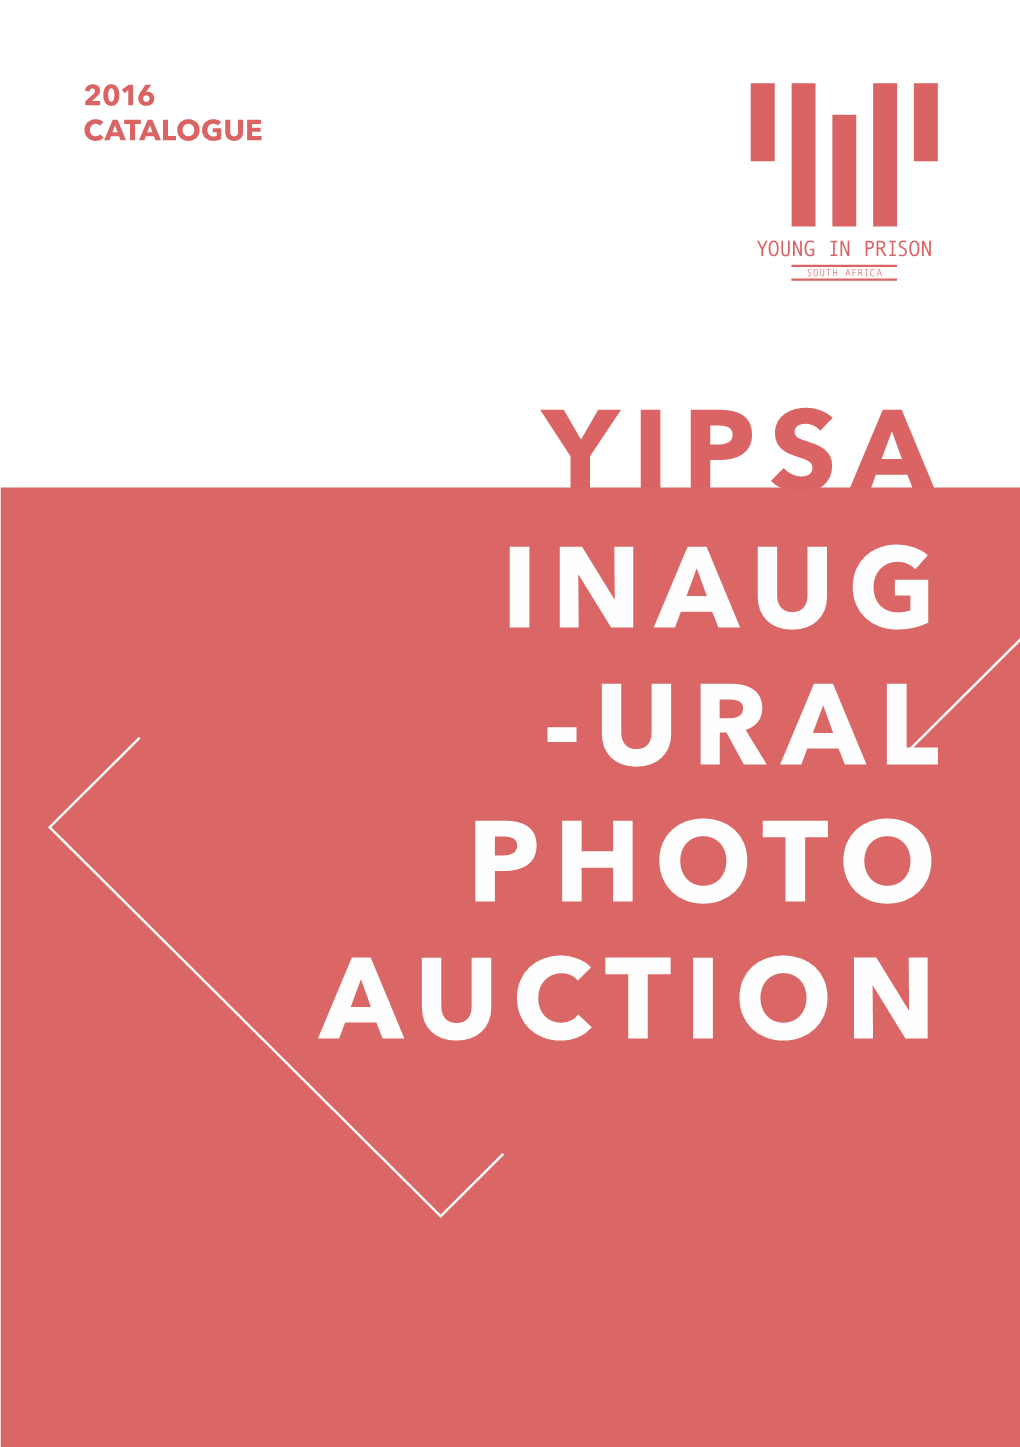 Yipsa Catalogue